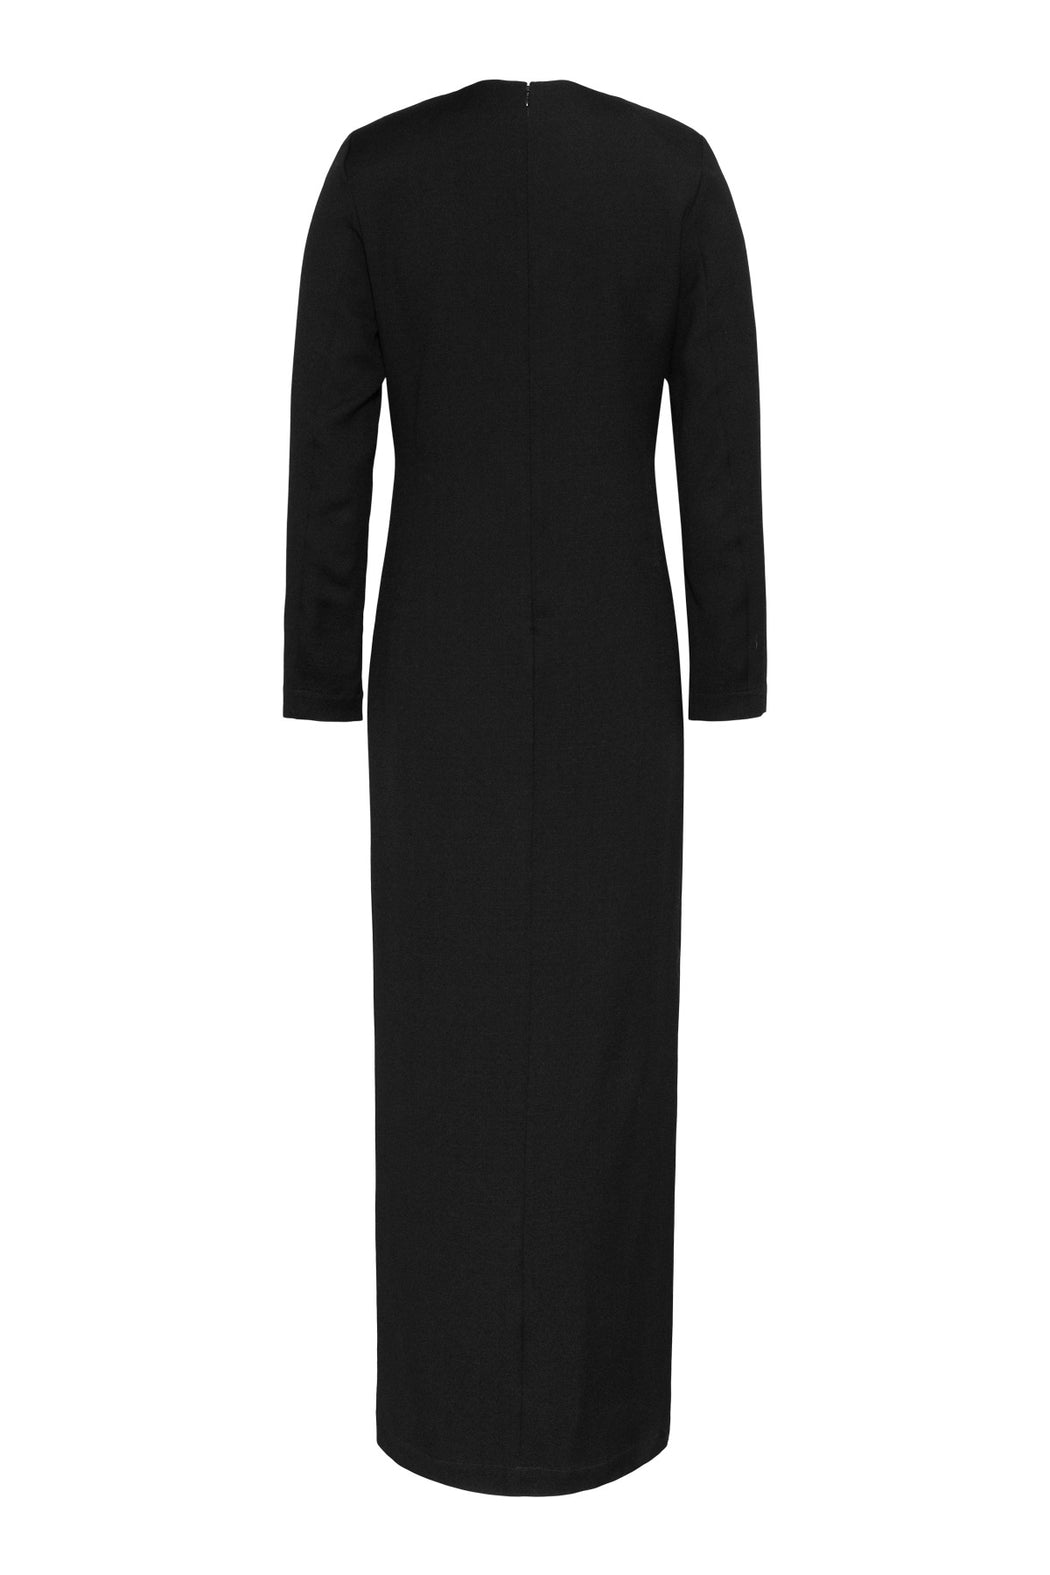 Envelope1976 Roanne dress, Black Dress Black